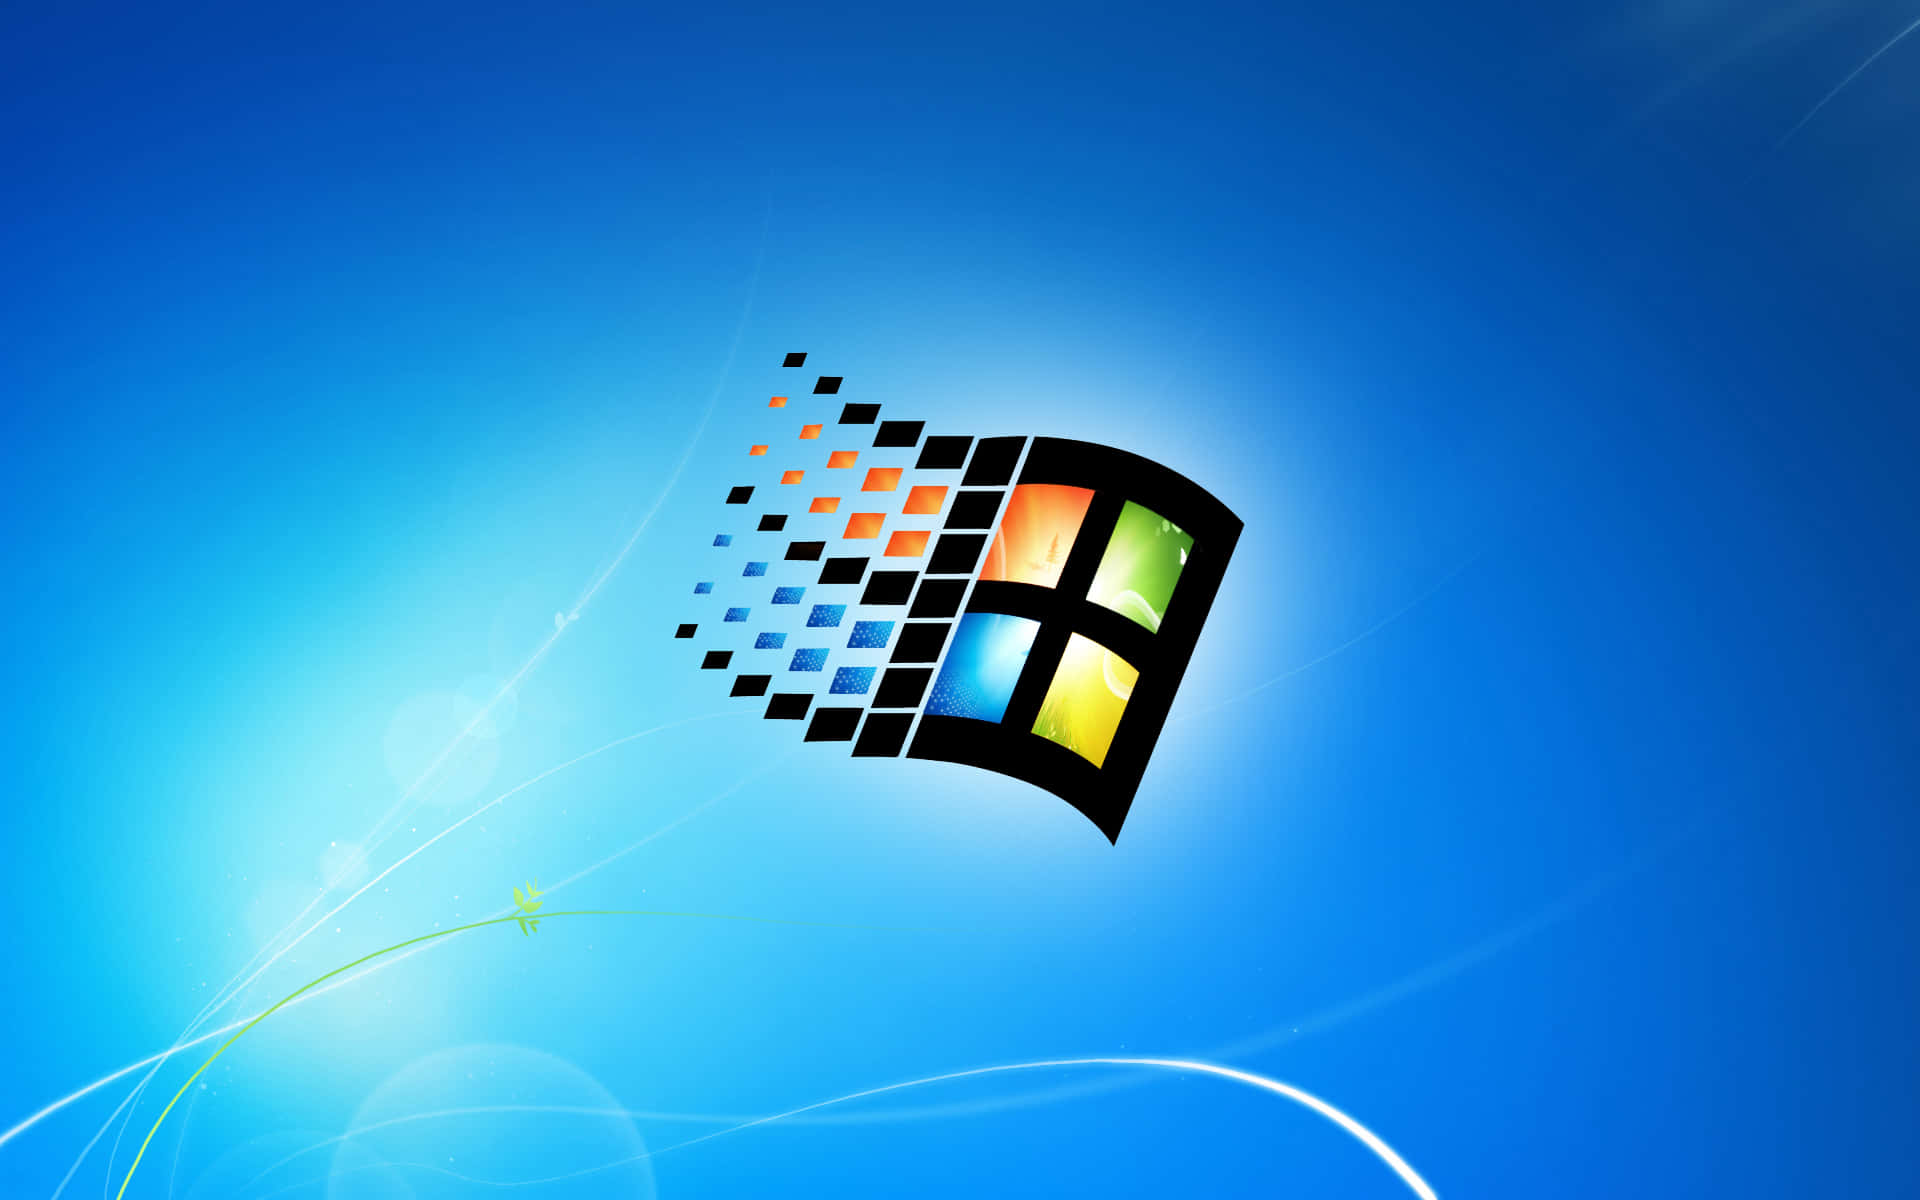 Taen Titt På Den Livfulla Windows Standardbakgrunden.